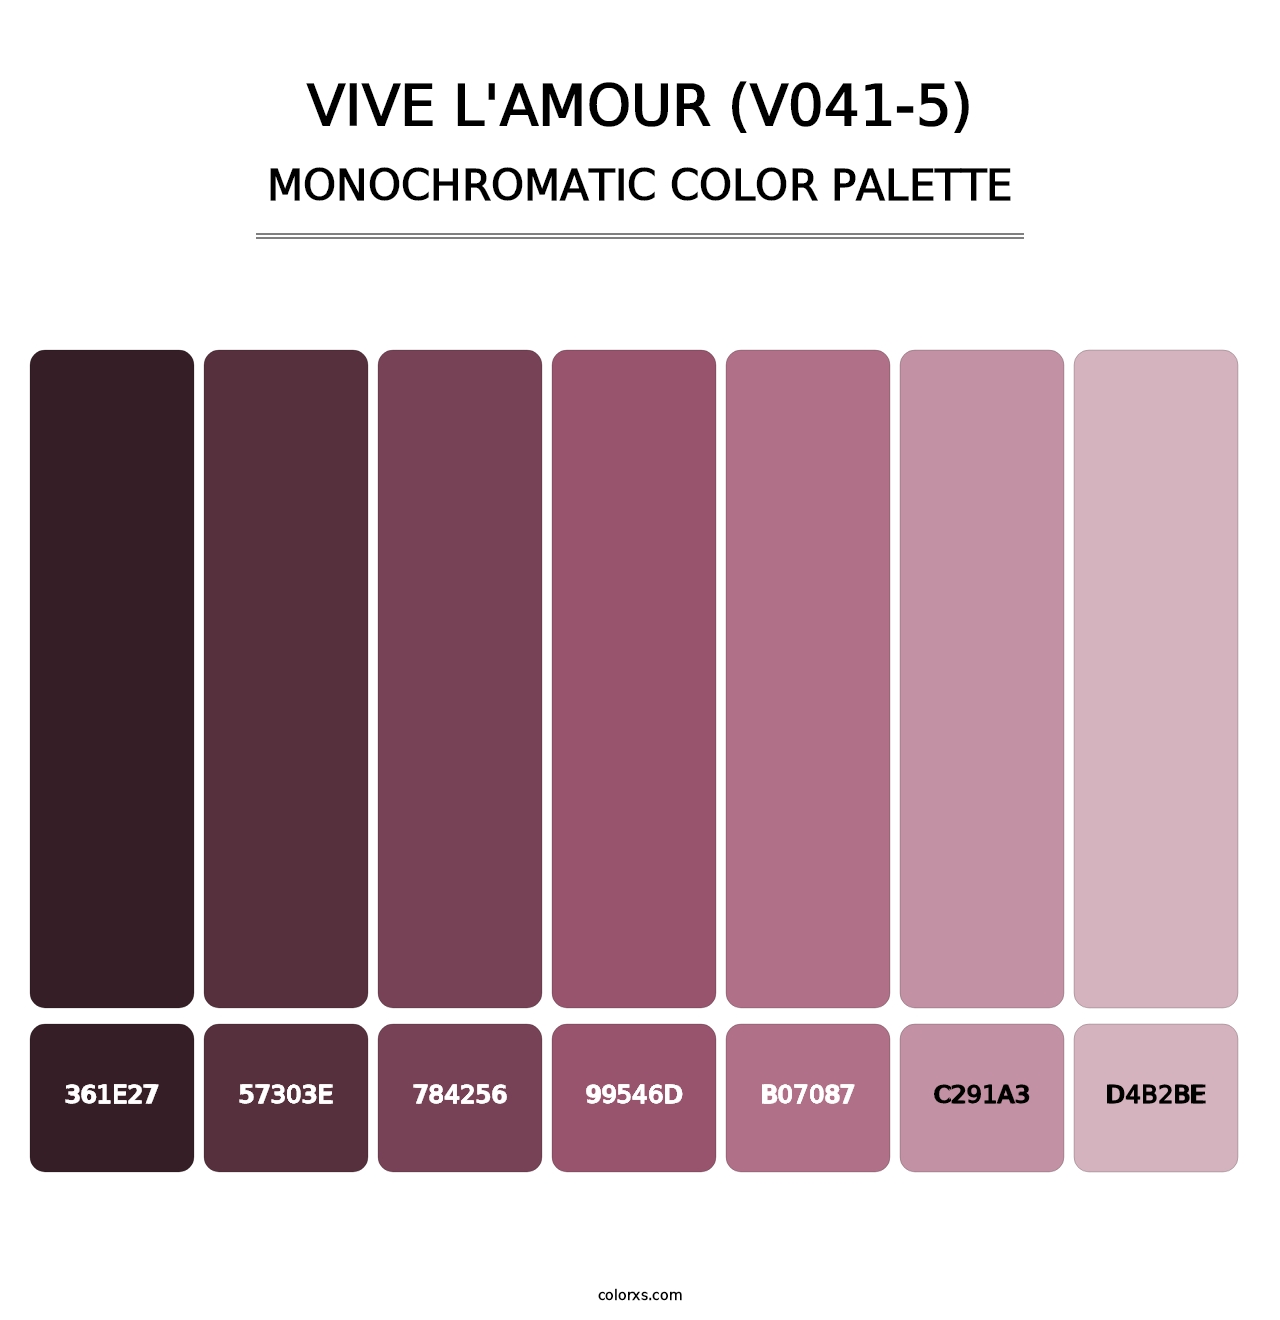 Vive l'amour (V041-5) - Monochromatic Color Palette